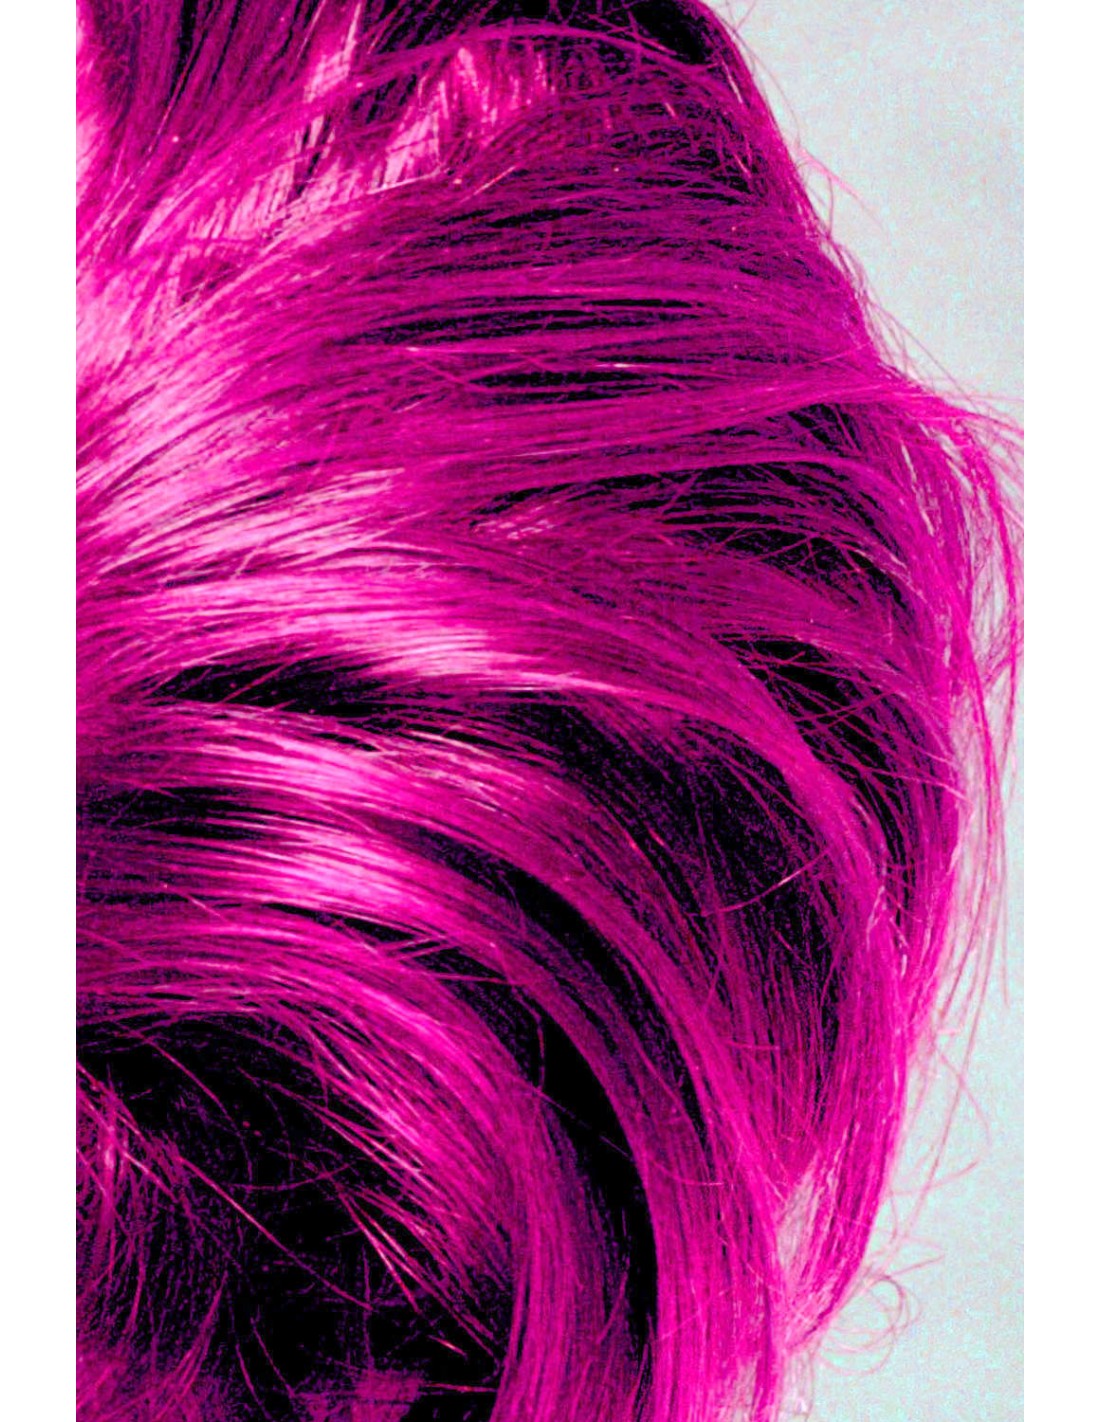 Manic Panic Hot Hot Pink Hair Dye